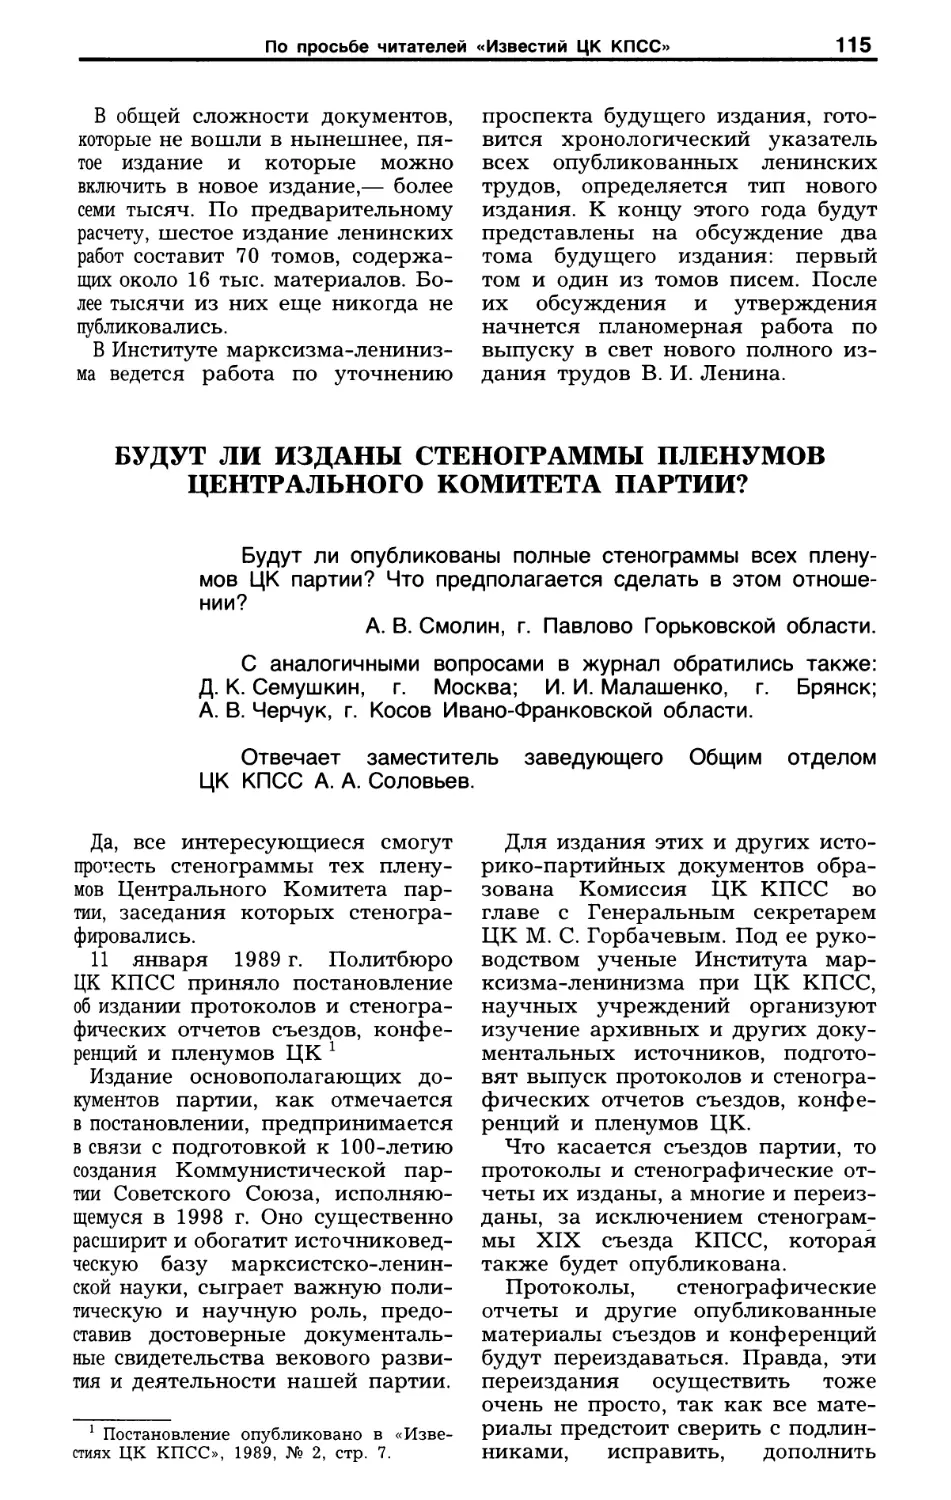 Будут ли изданы стенограммы пленумов ЦК партии